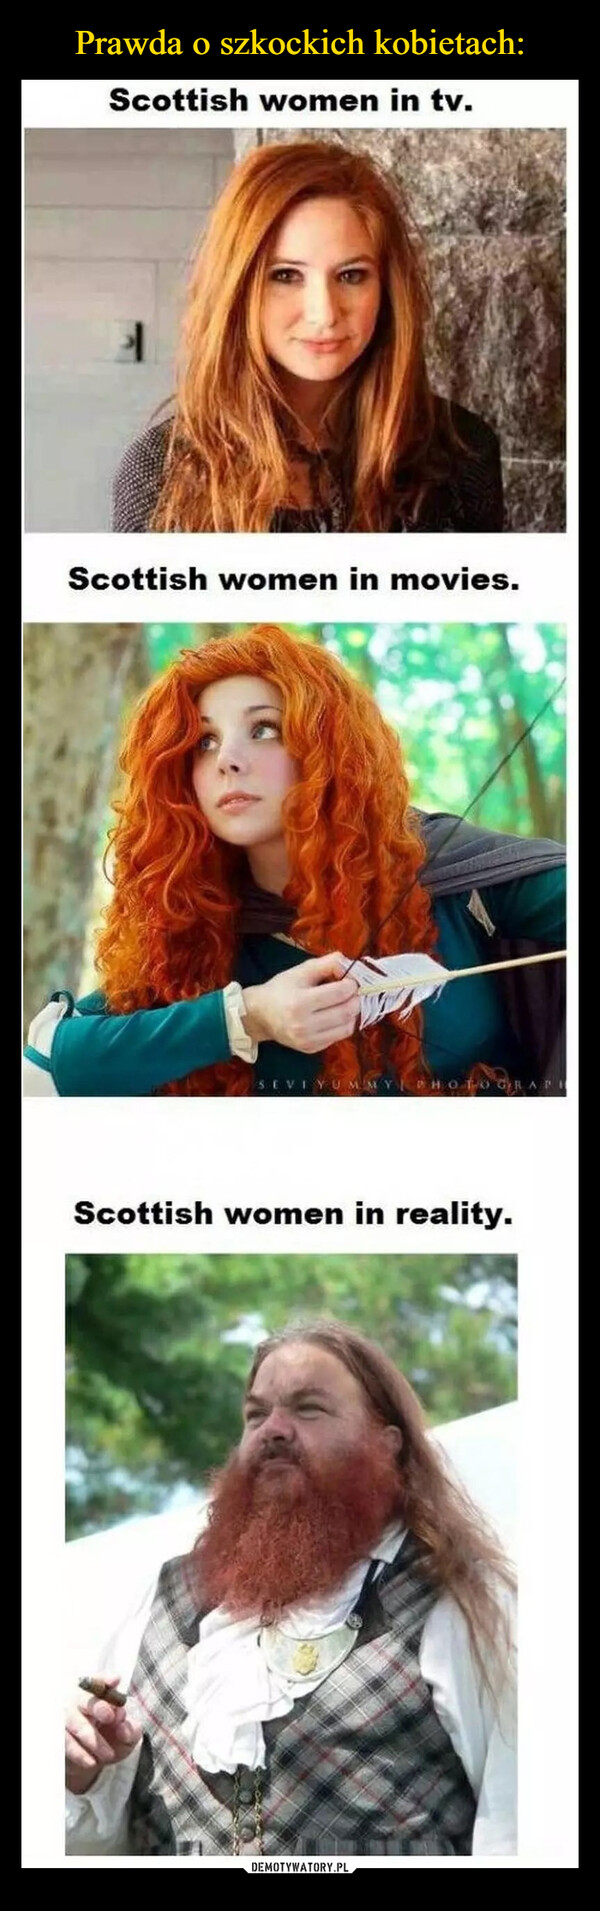 Prawda o szkockich kobietach: